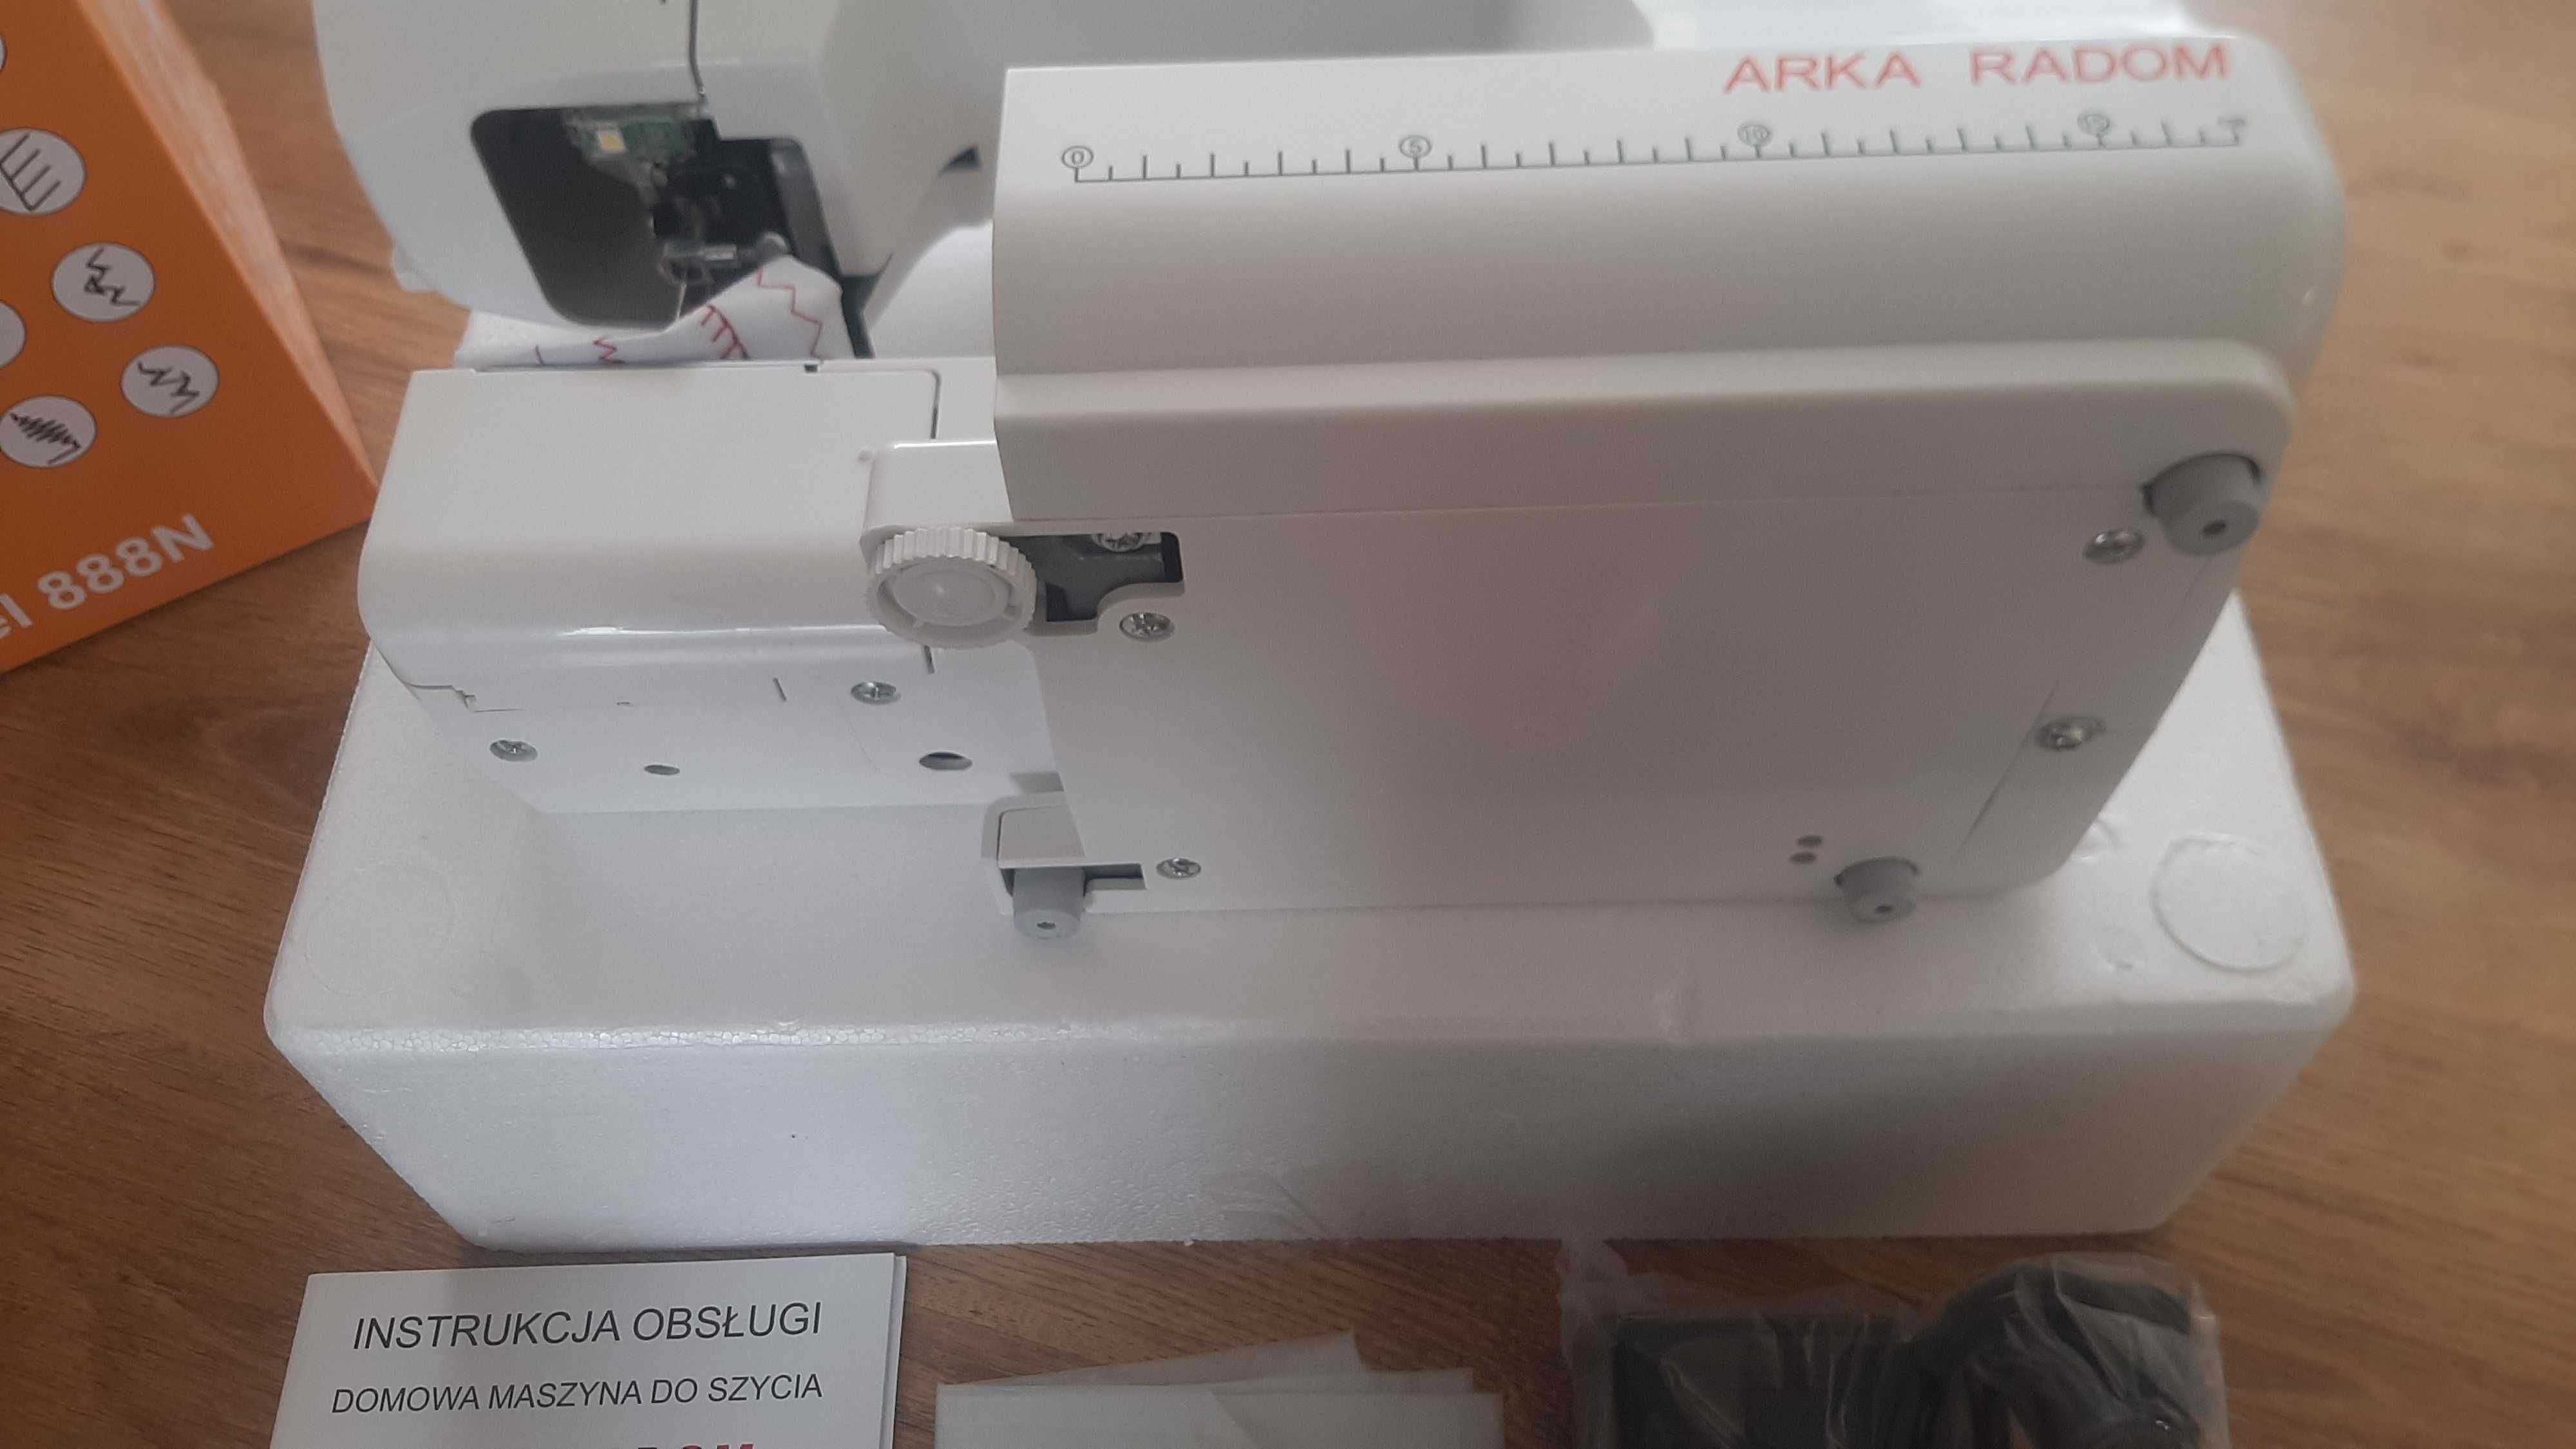 Продам швейну машину Arka Radom 888N в повній комплектації